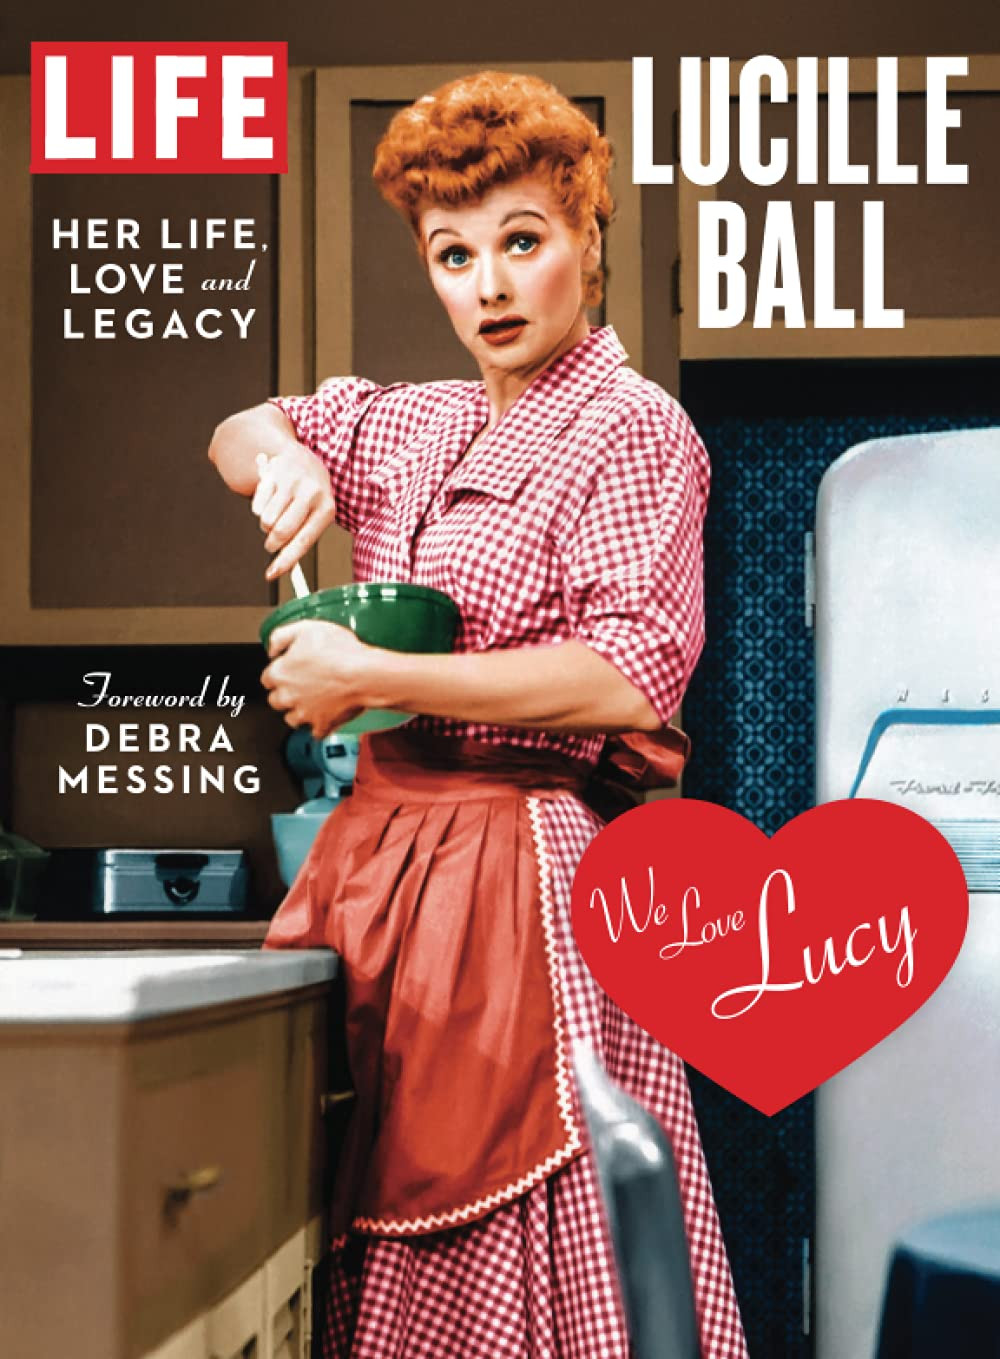 Portada de la revista 'Life' dedicada a Lucille Ball